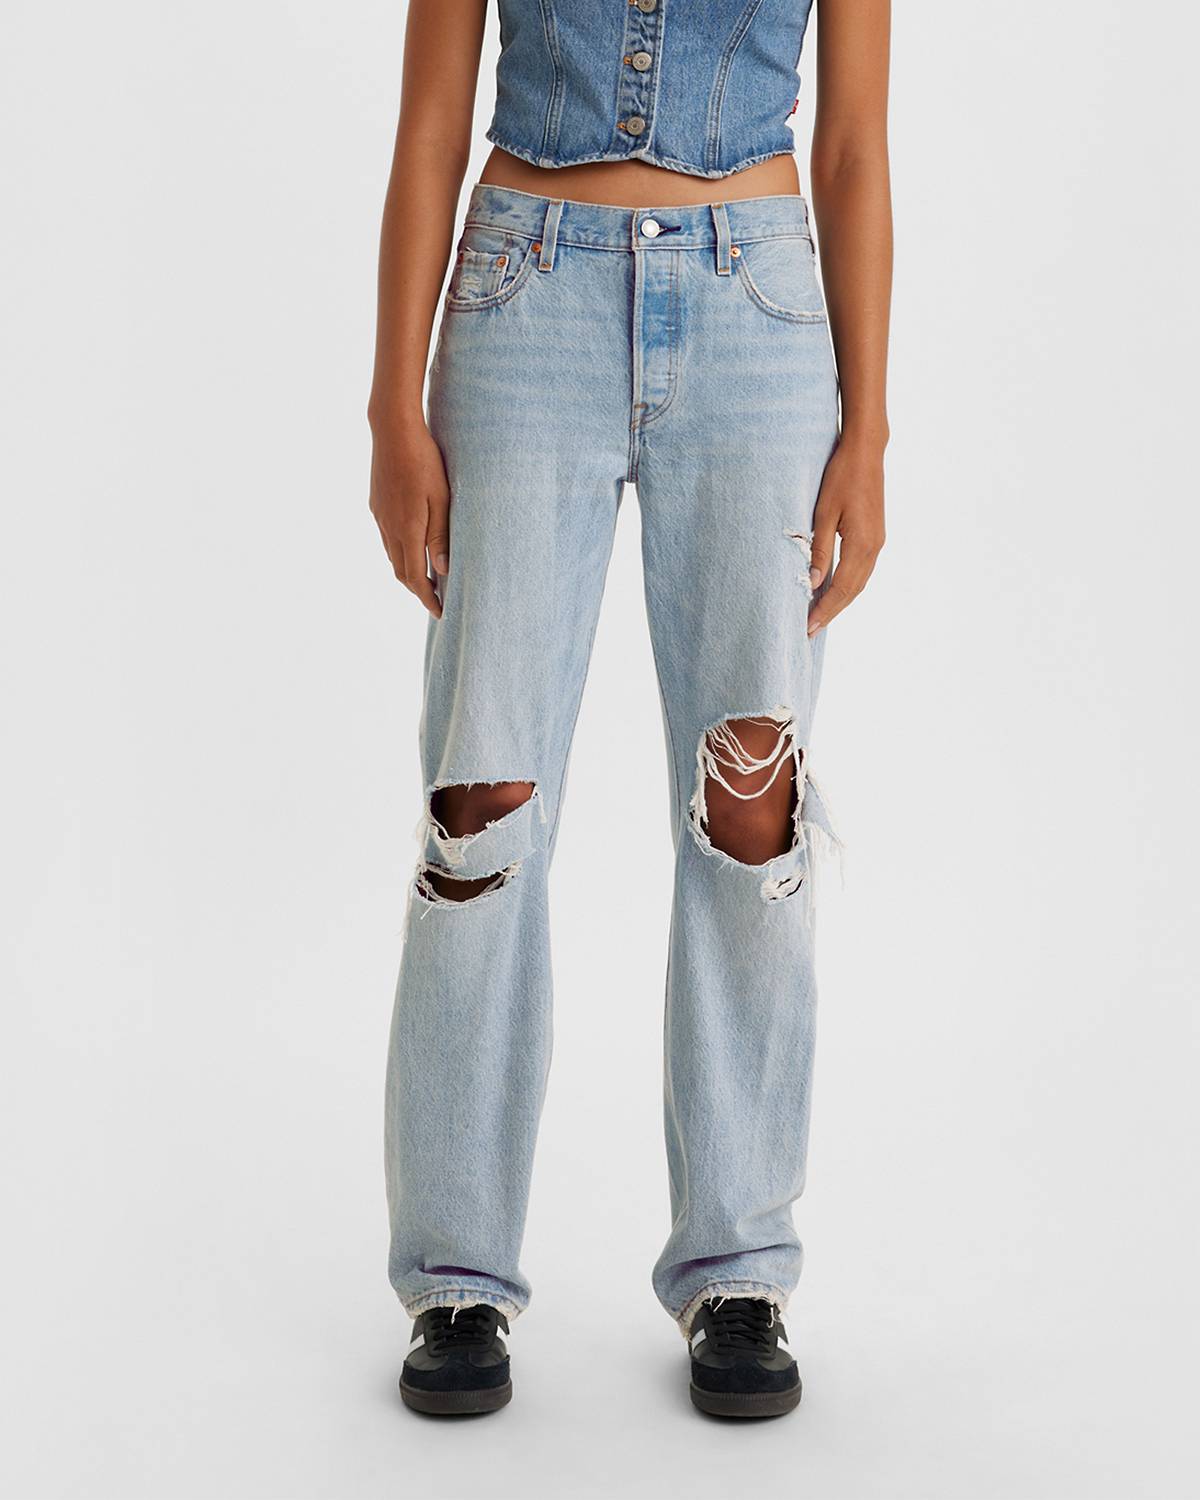 Model wearing 501® '90s jeans